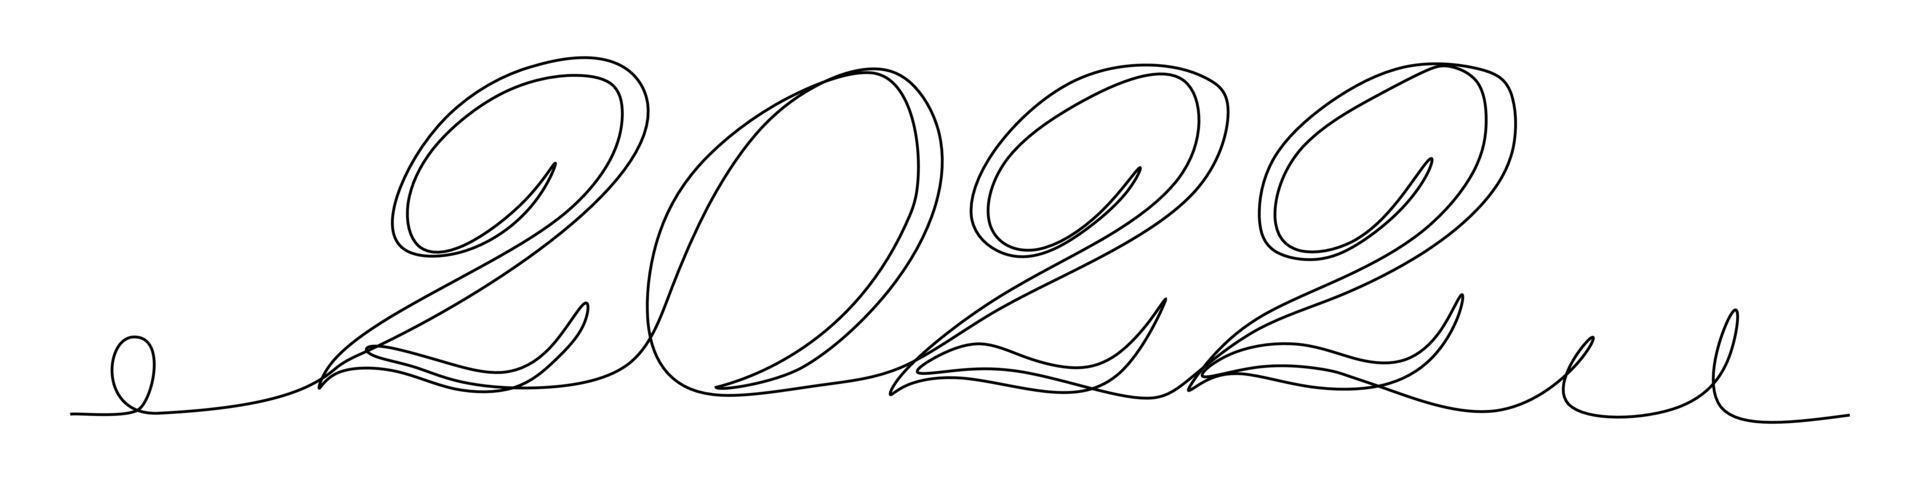 felice anno nuovo 2022 logo design del testo. Modello di progettazione del numero di anni 2022 disegno a linea continua. illustrazione vettoriale con gatti neri isolati su sfondo bianco